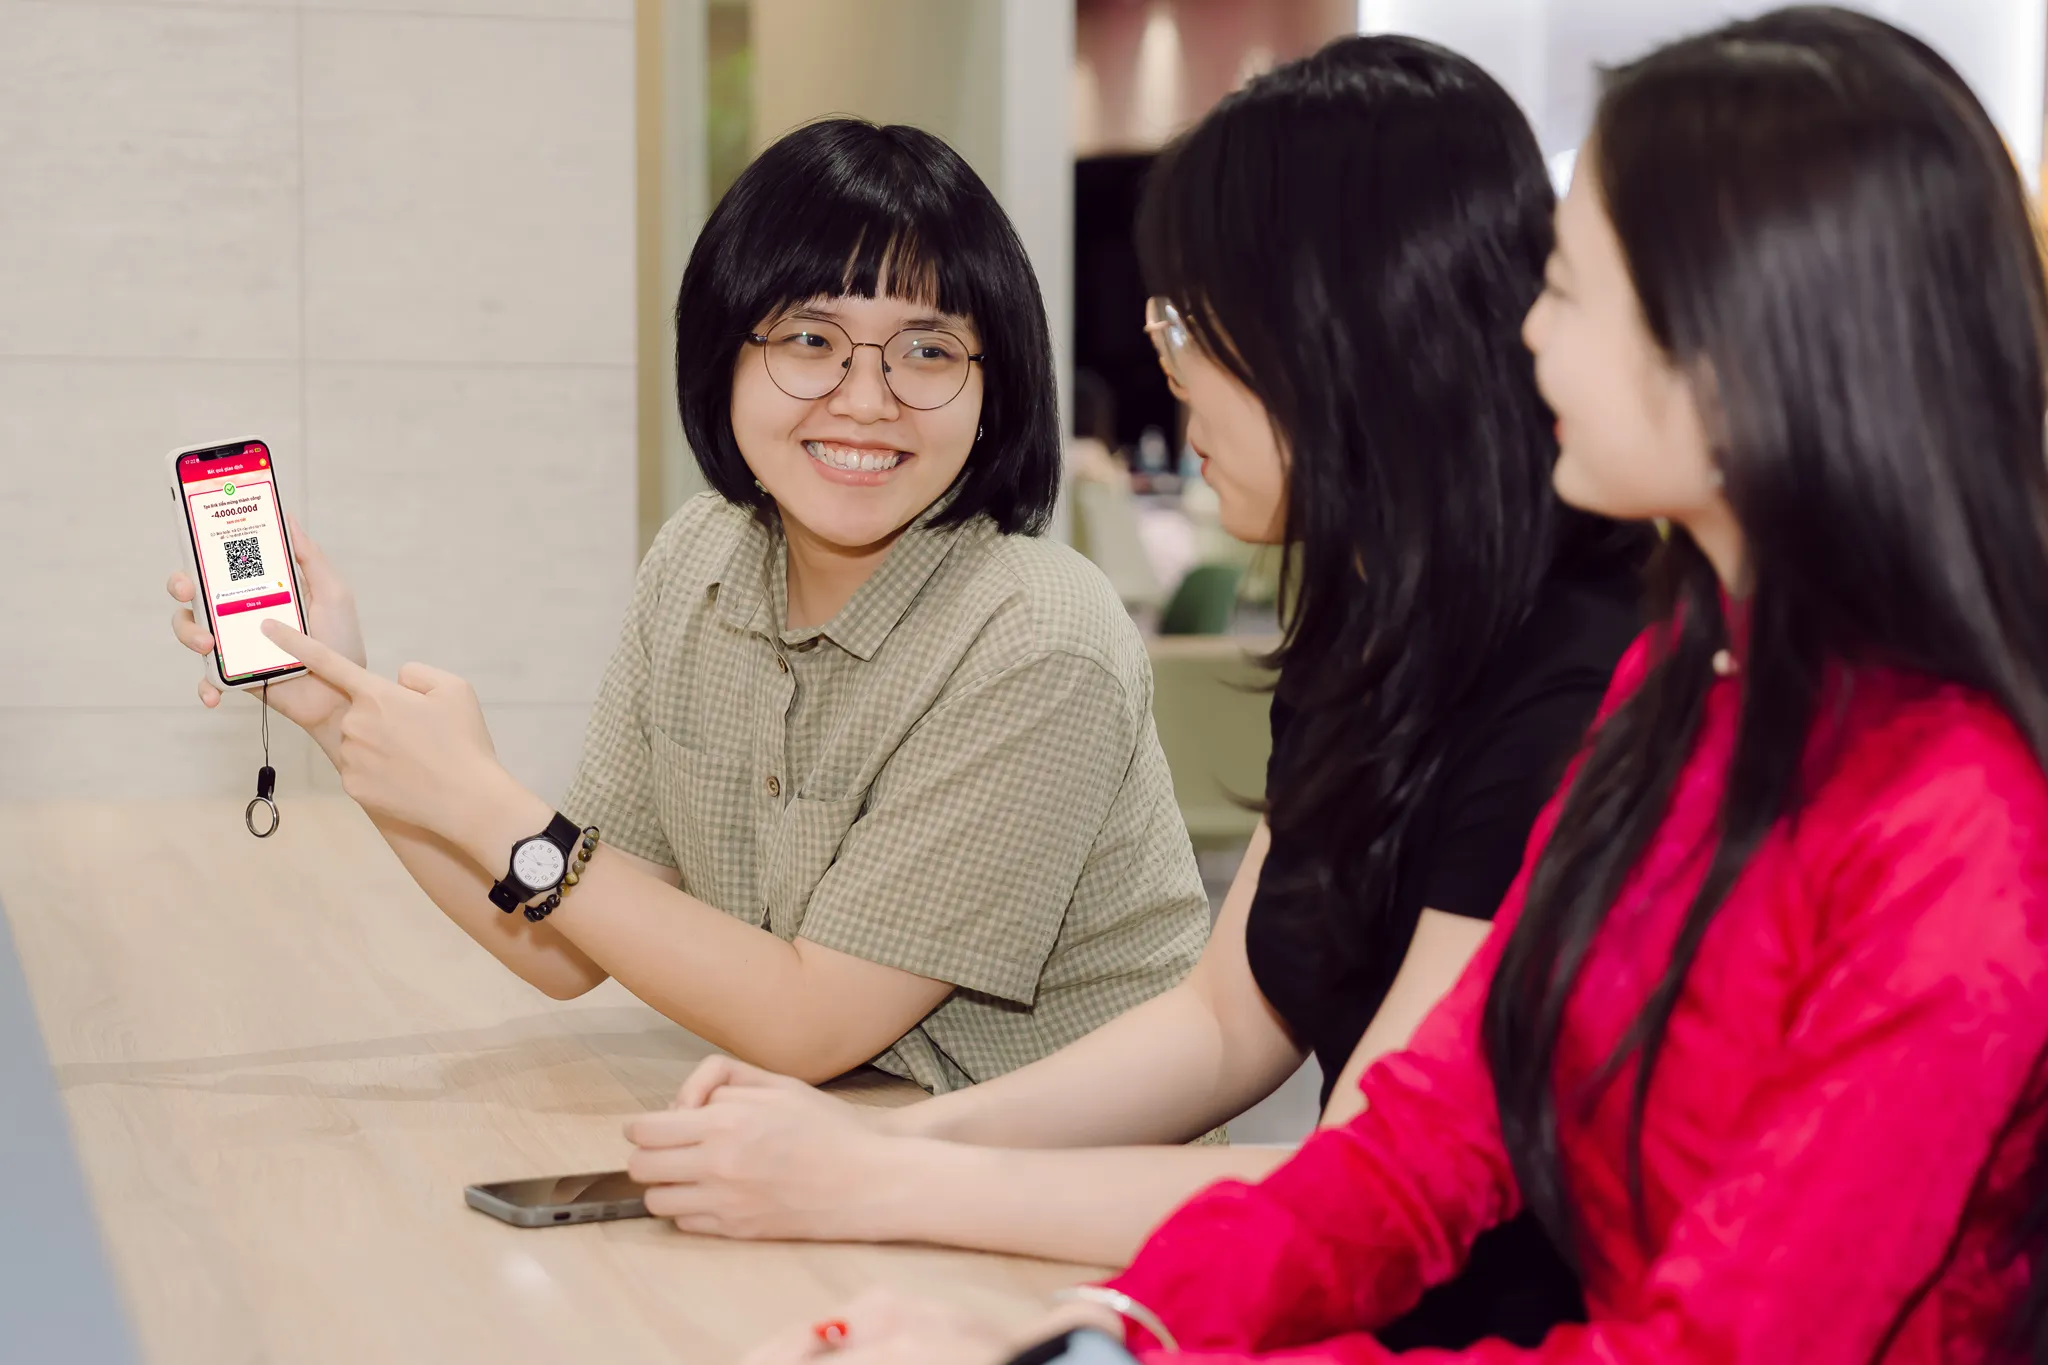 MoMo hợp tác Schannel, mở lối sáng tạo cho thế hệ người dùng trẻ Việt yêu công nghệ, tiêu dùng thông minh qua cuộc thi kể chuyện đời thường